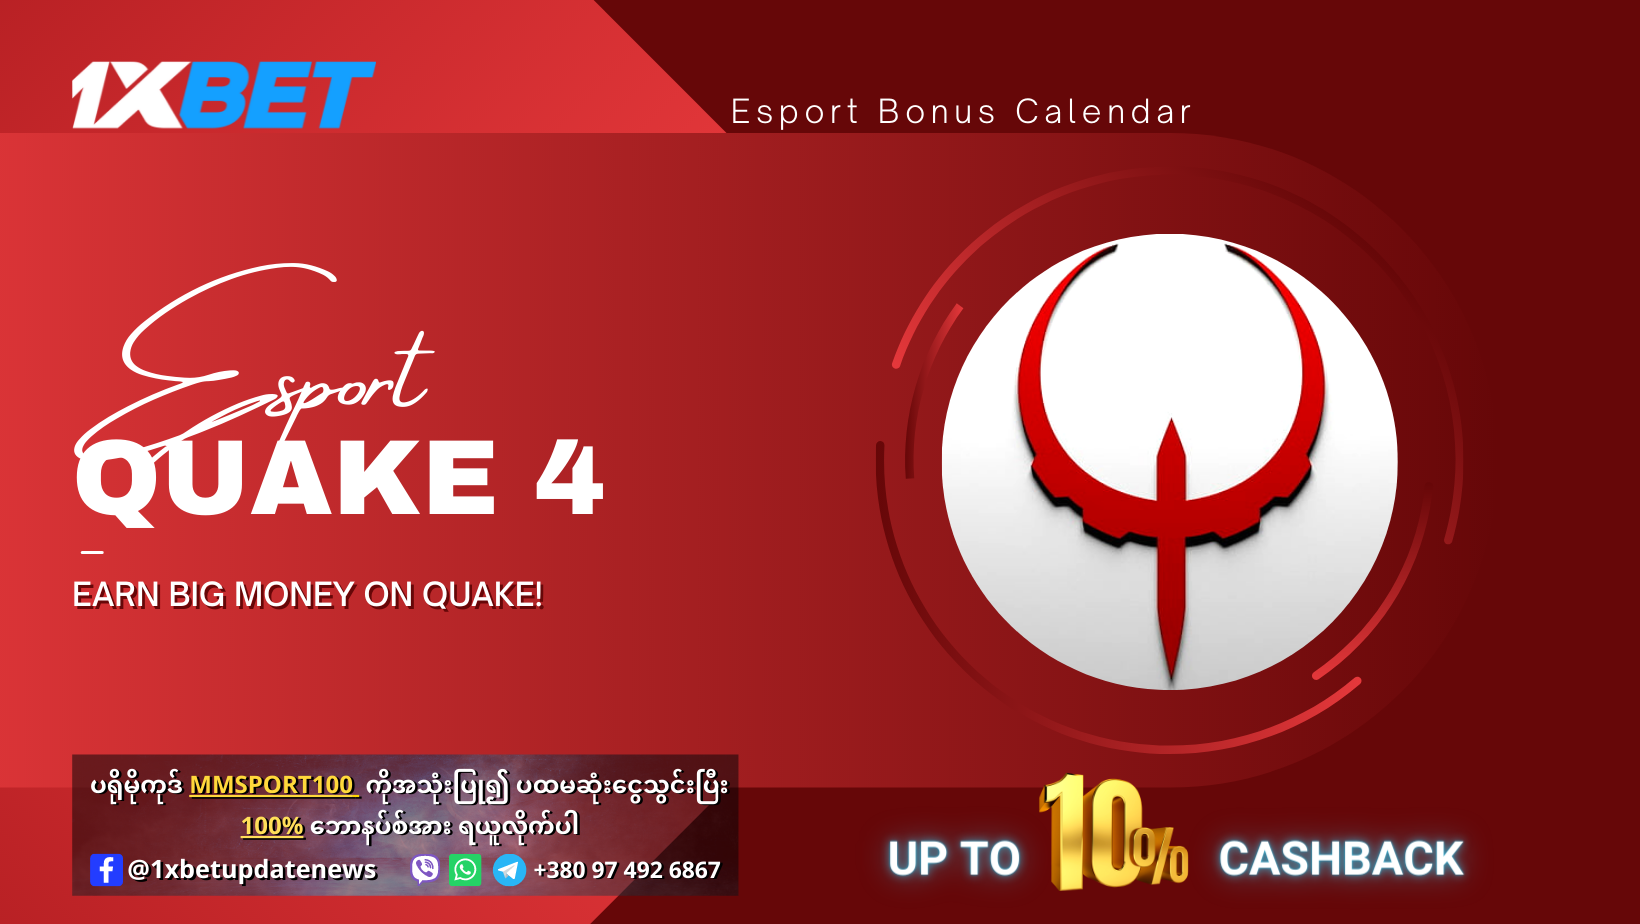 Esport Quake 4 Offer